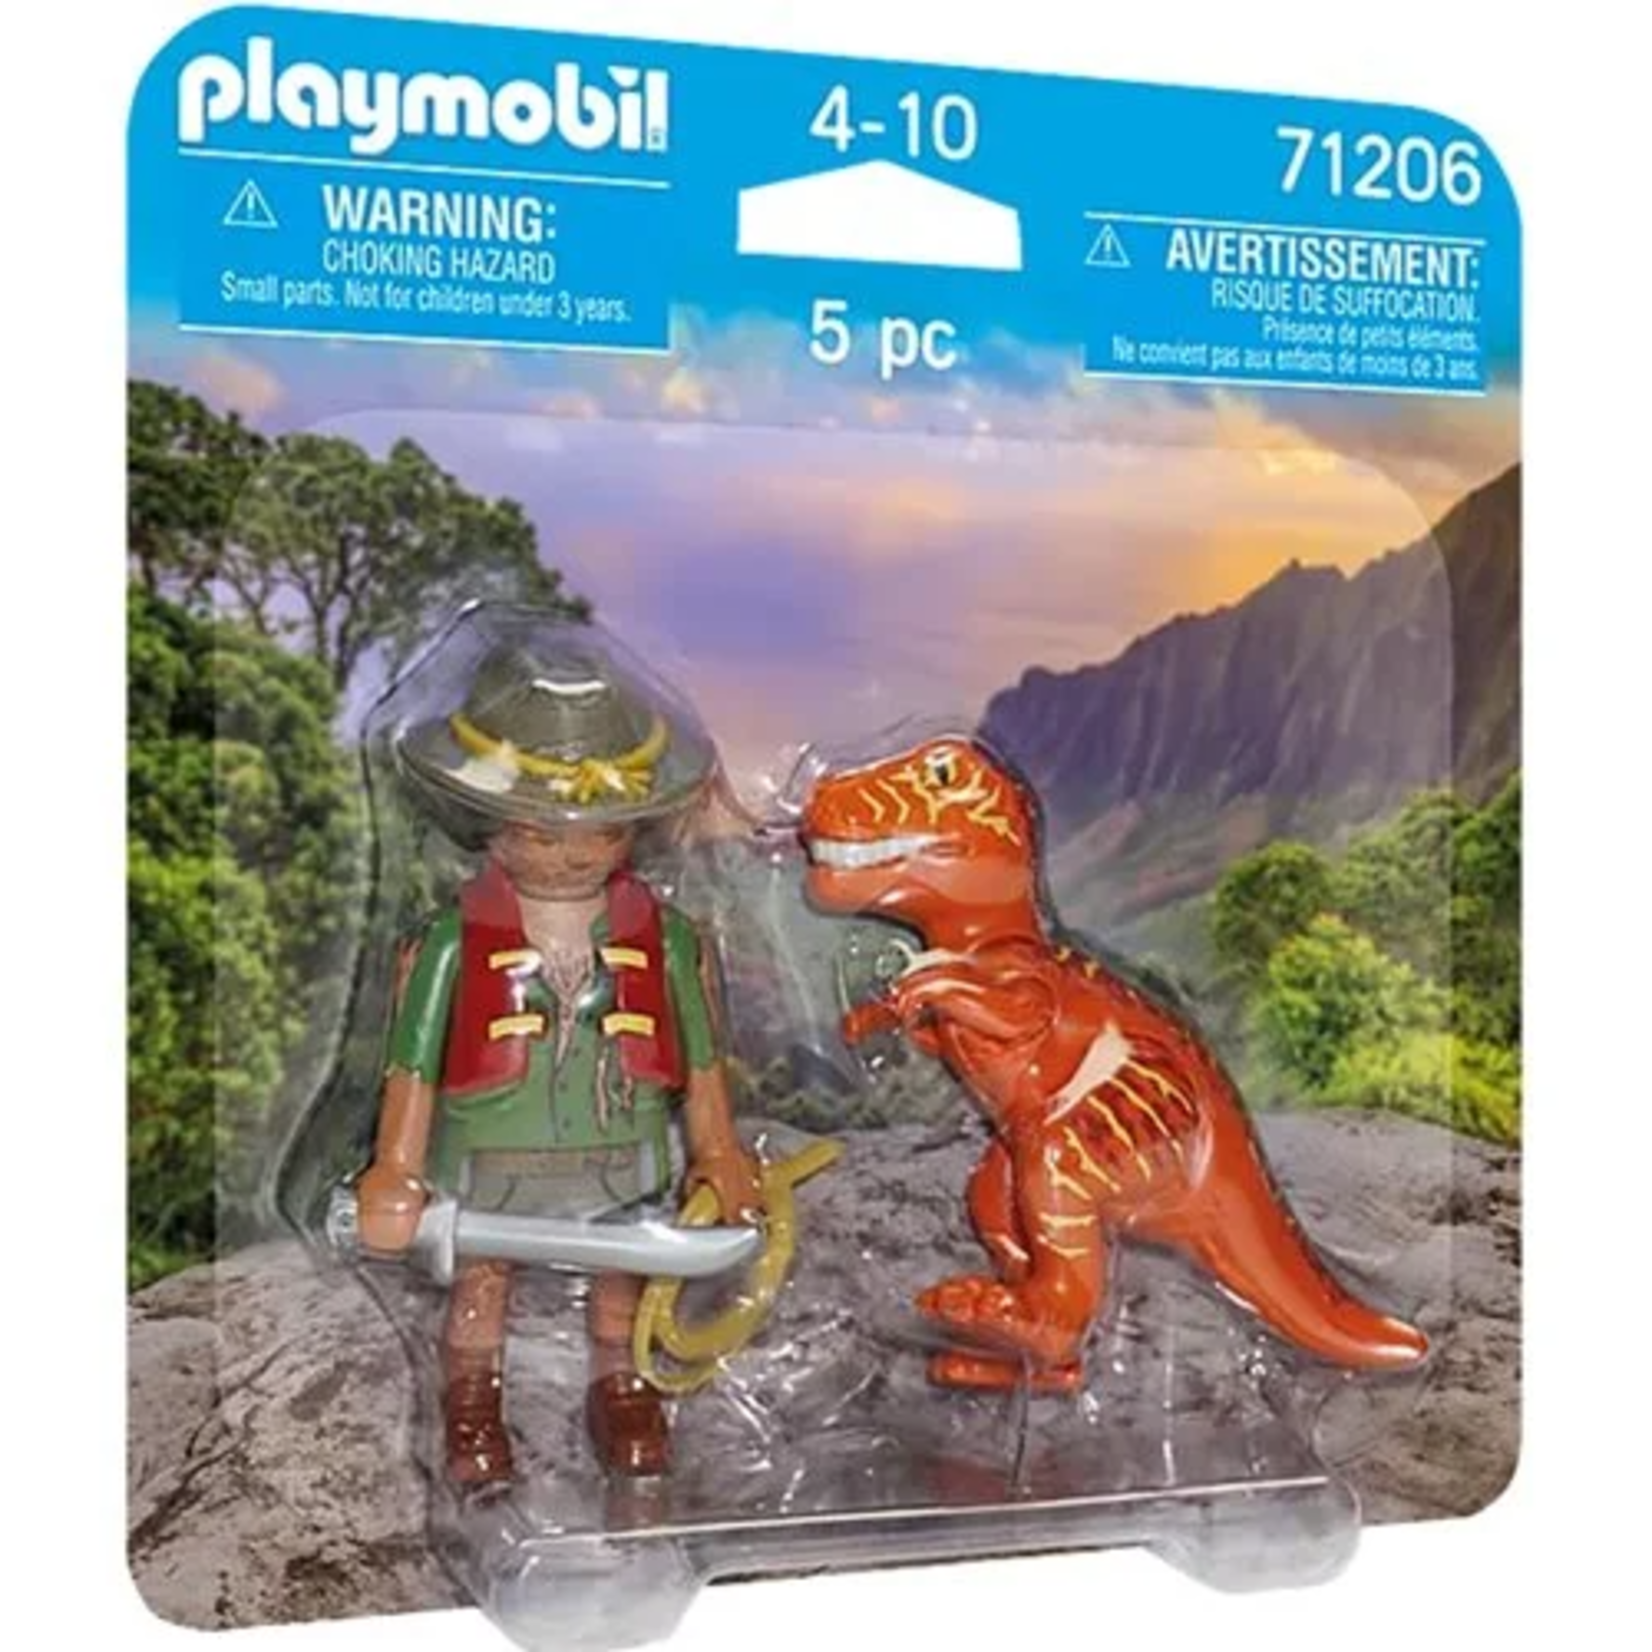 Playmobil Adventurer with T-Rex DuoPack - Playmobil 71206